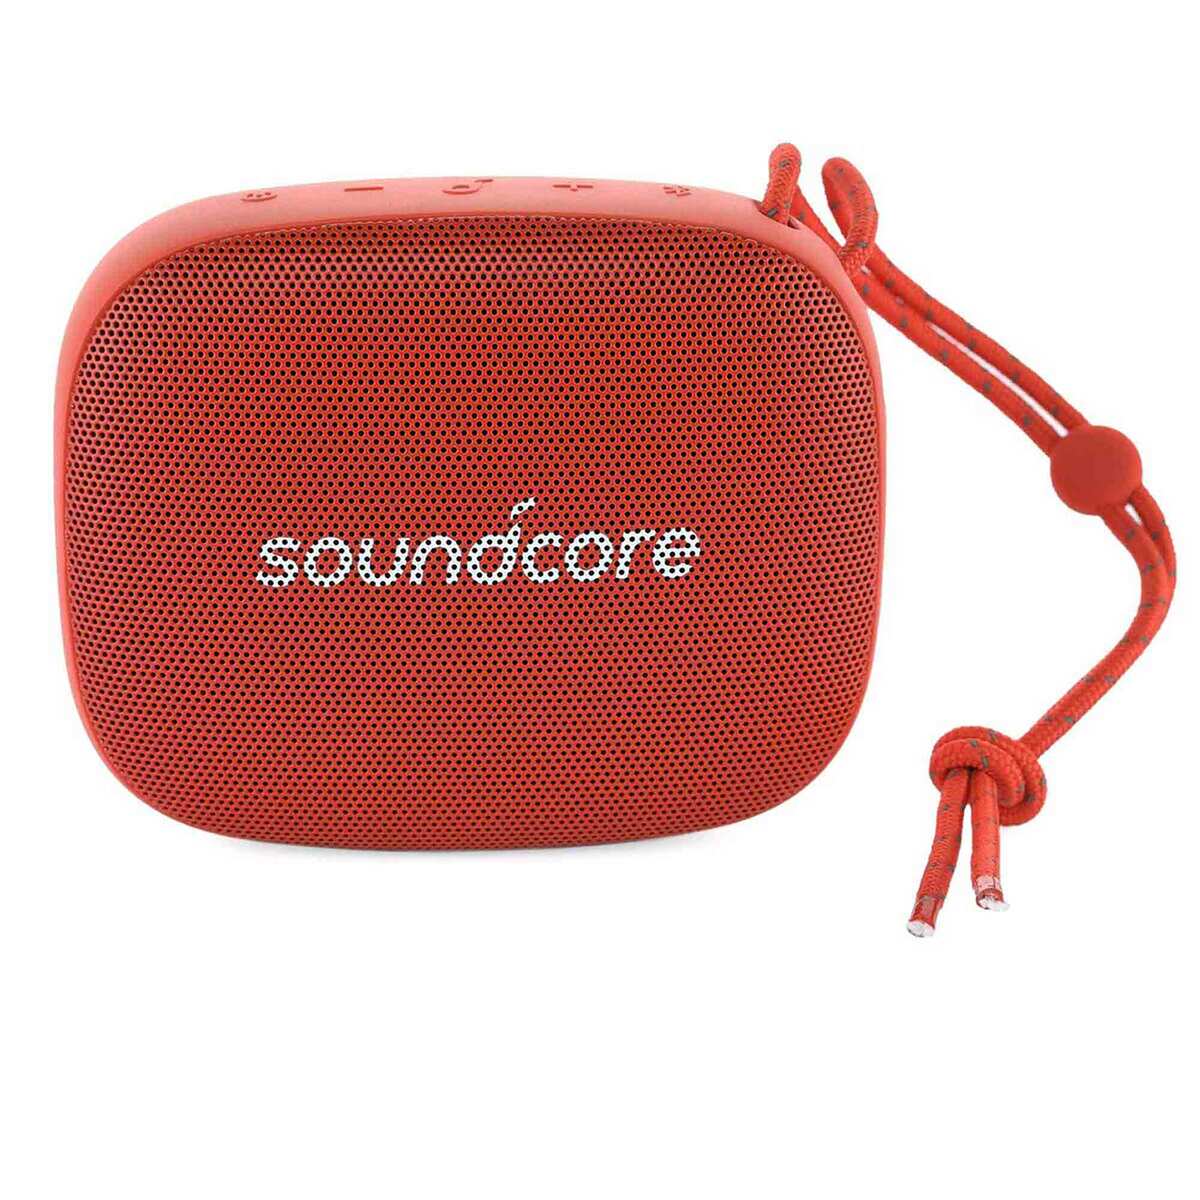 Anker Soundcore Portable Bluetooth speaker Icon Mini Red